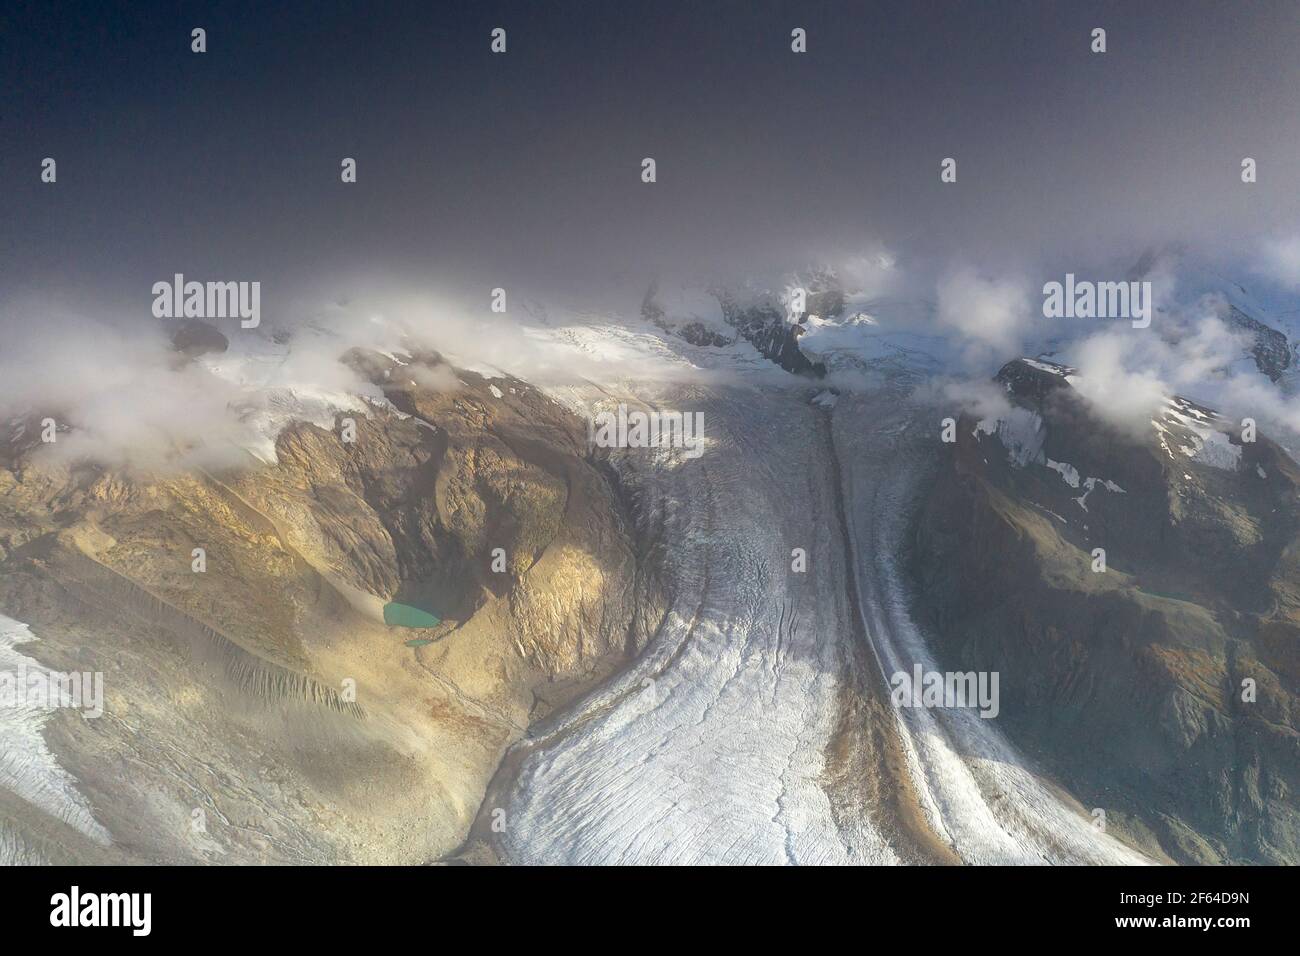 Vue aérienne du glacier Gorner (Gornergletscher) et des sommets montagneux dans la brume, Zermatt, canton du Valais, Suisse Banque D'Images